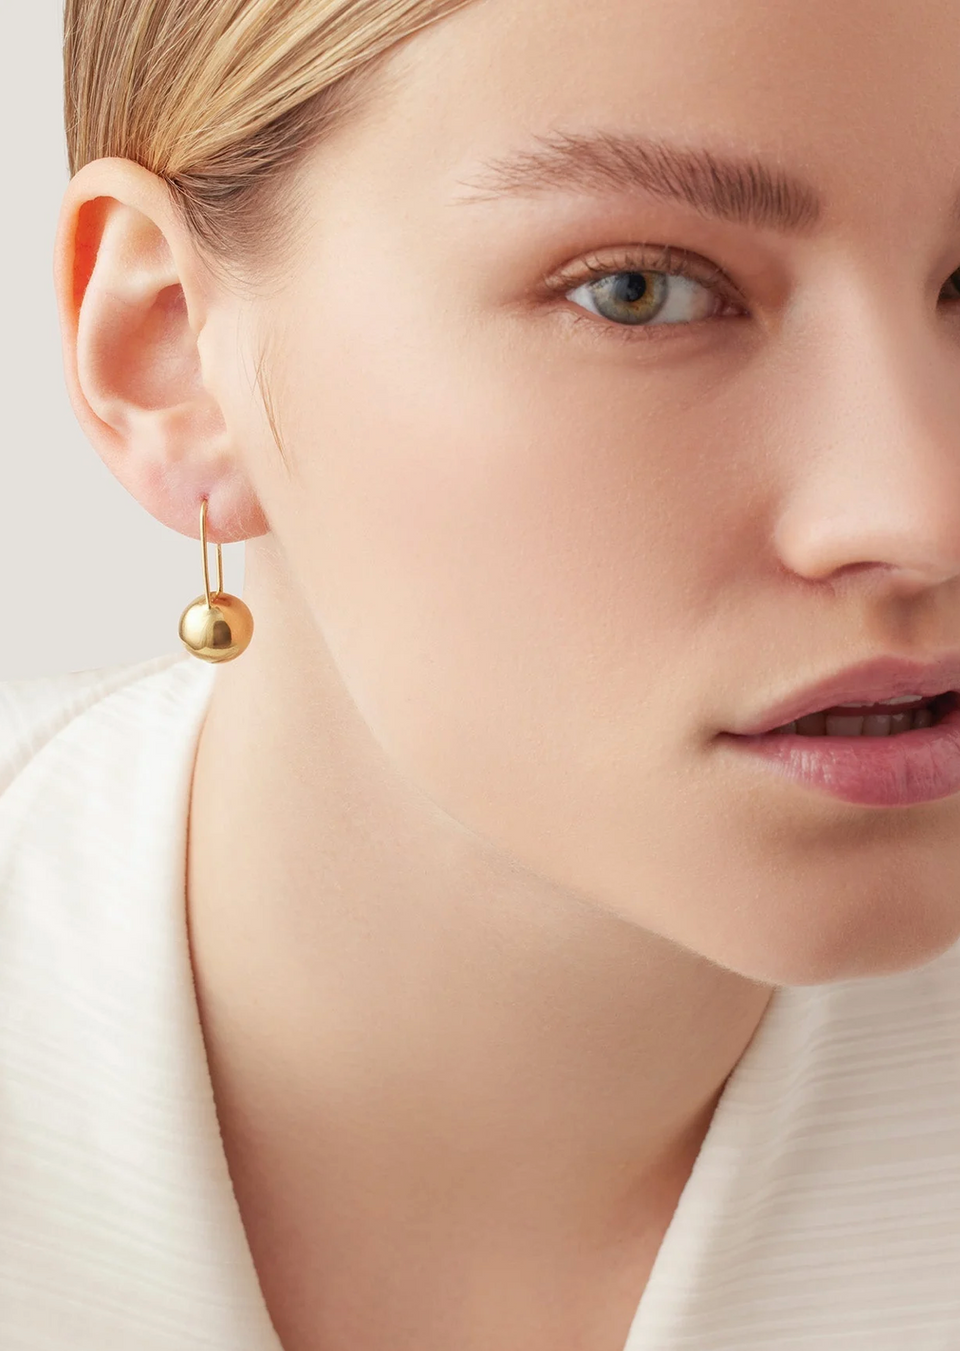 The Jenny Bird Celeste Earrings in Gold